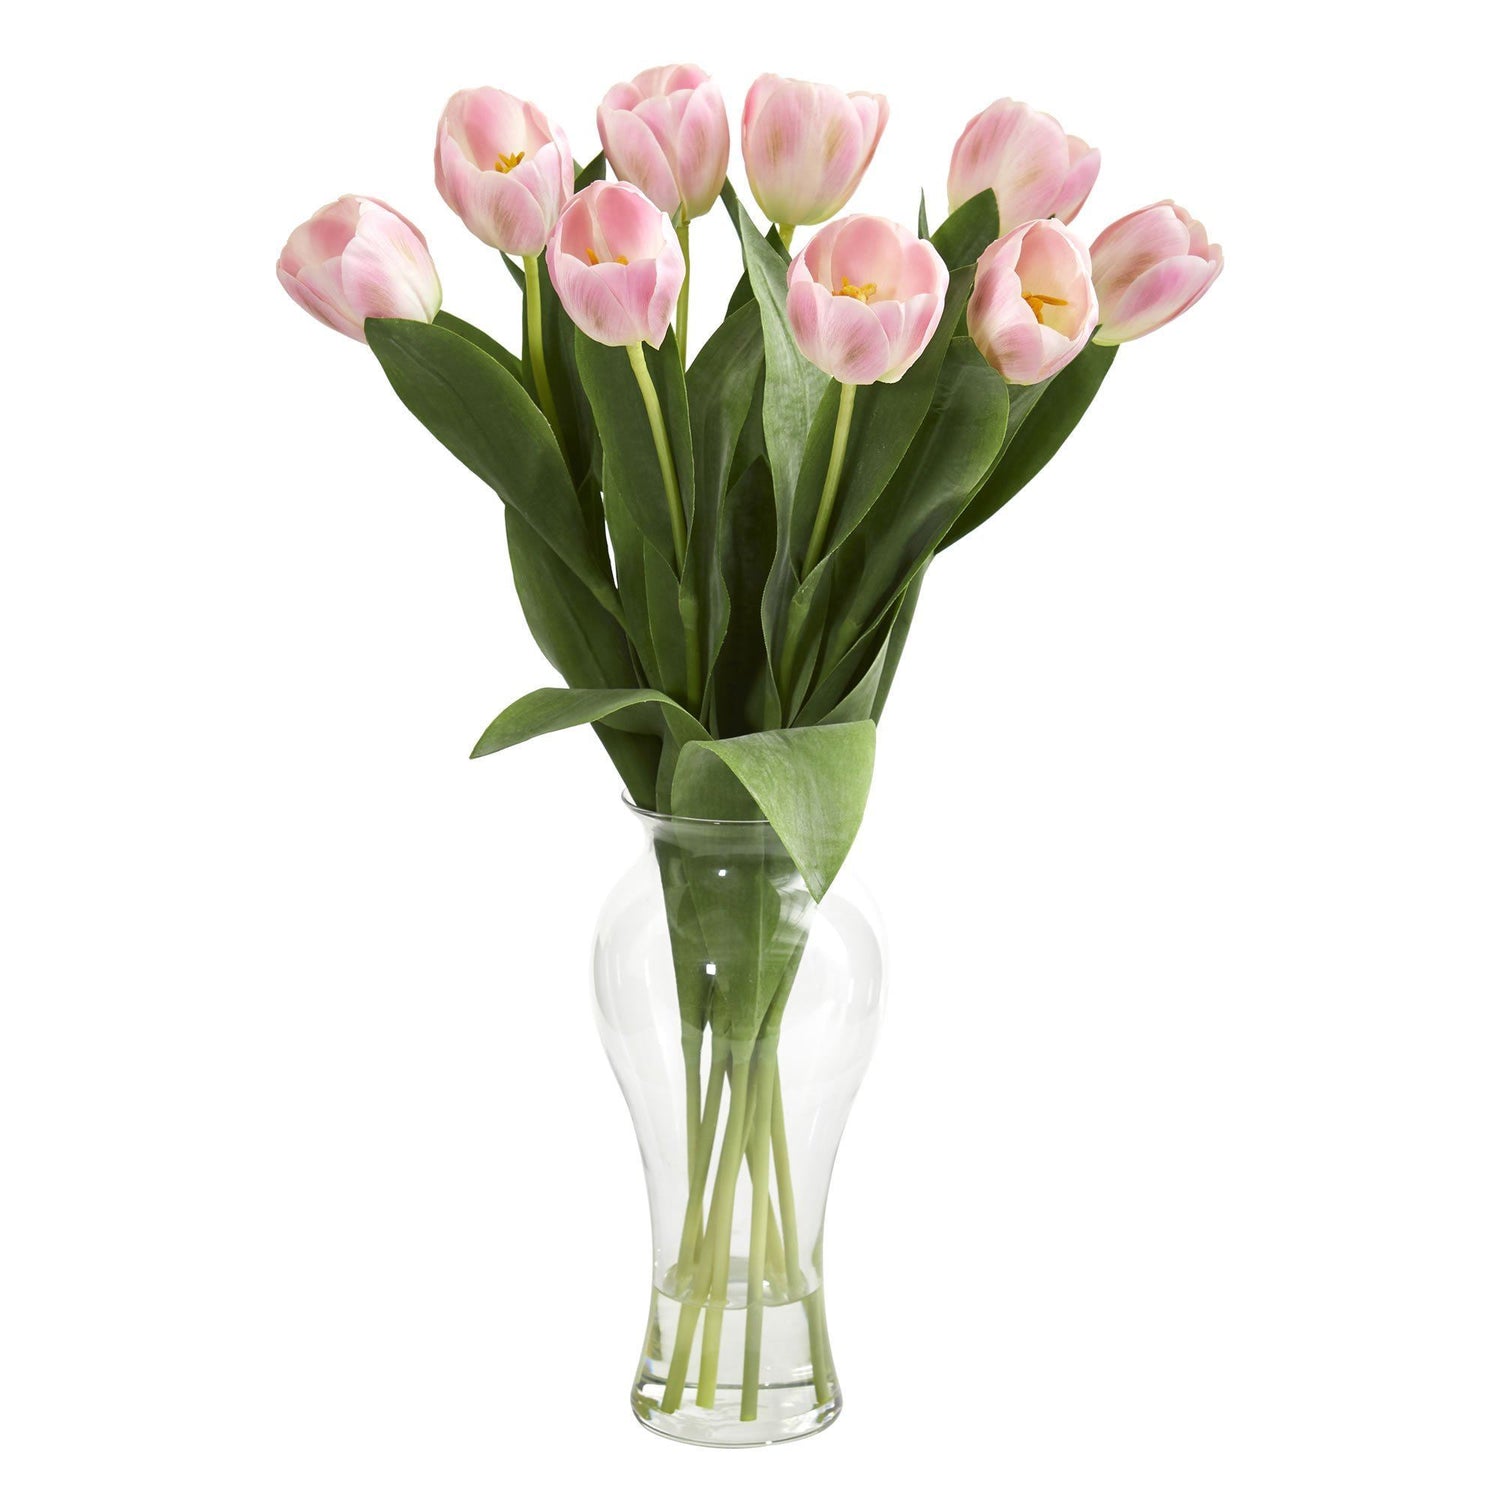 24” Tulips w/Vase